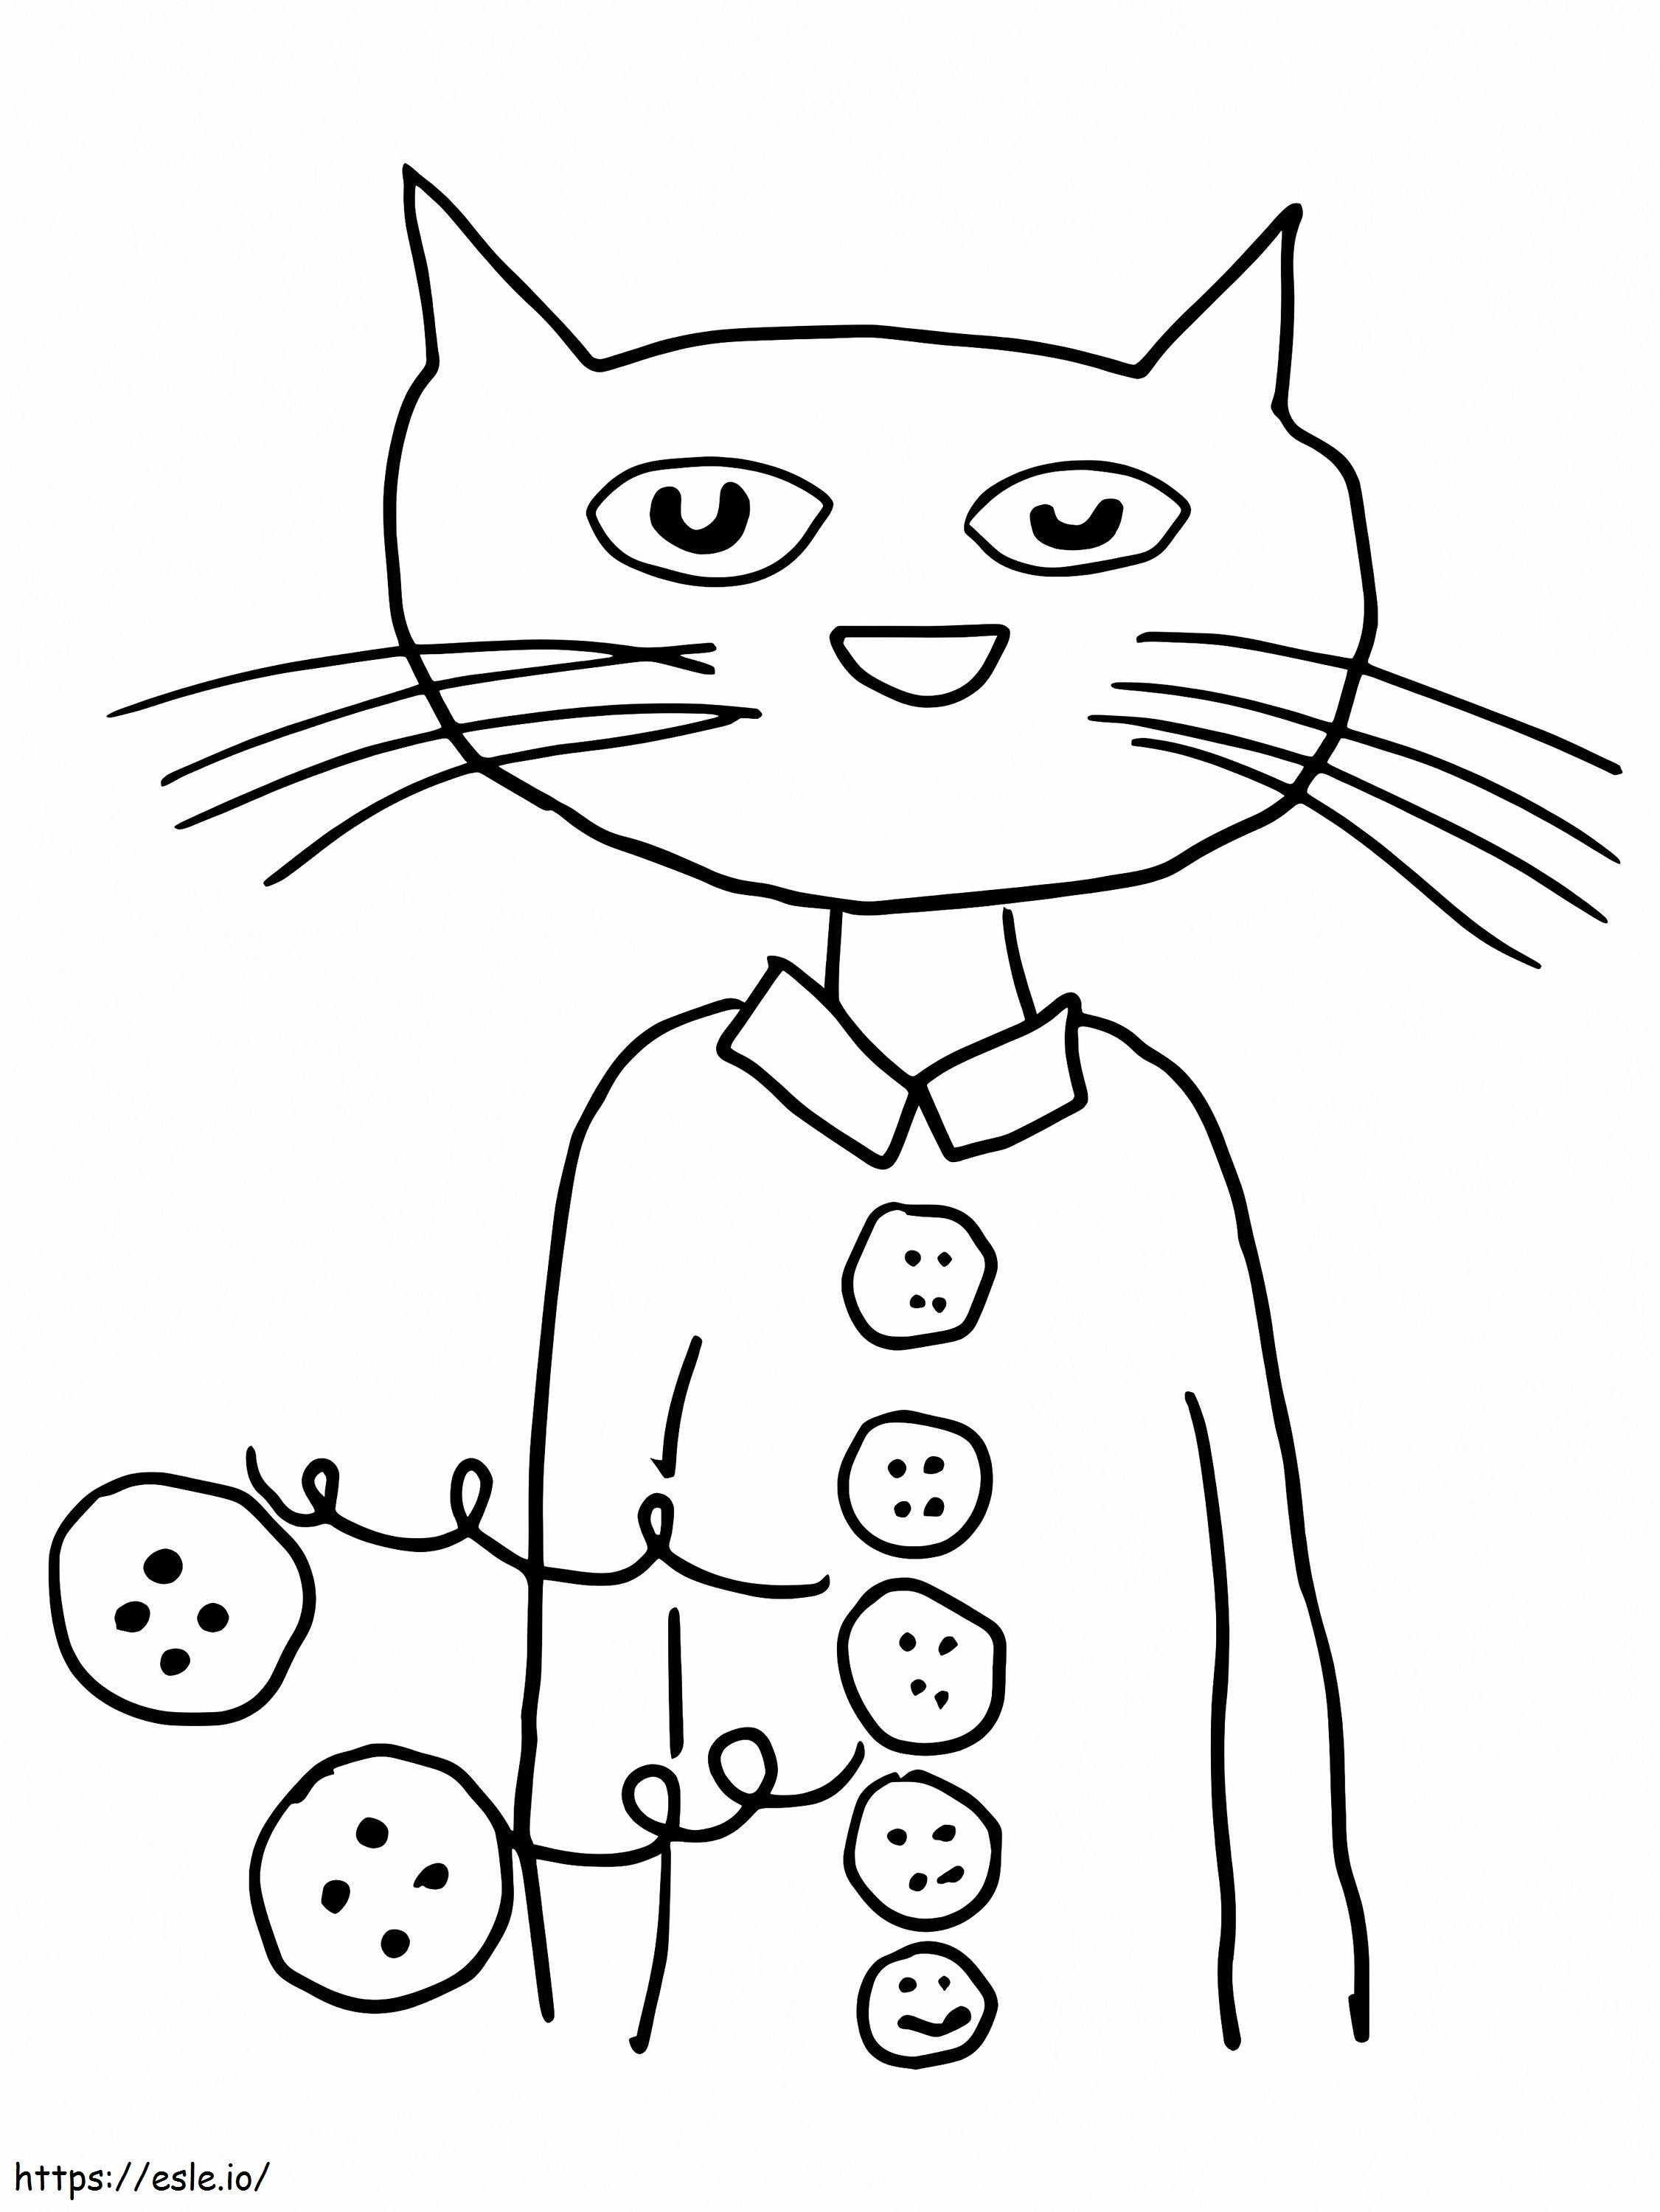 Coloriage Boutons Groovy Pete le chat à imprimer dessin